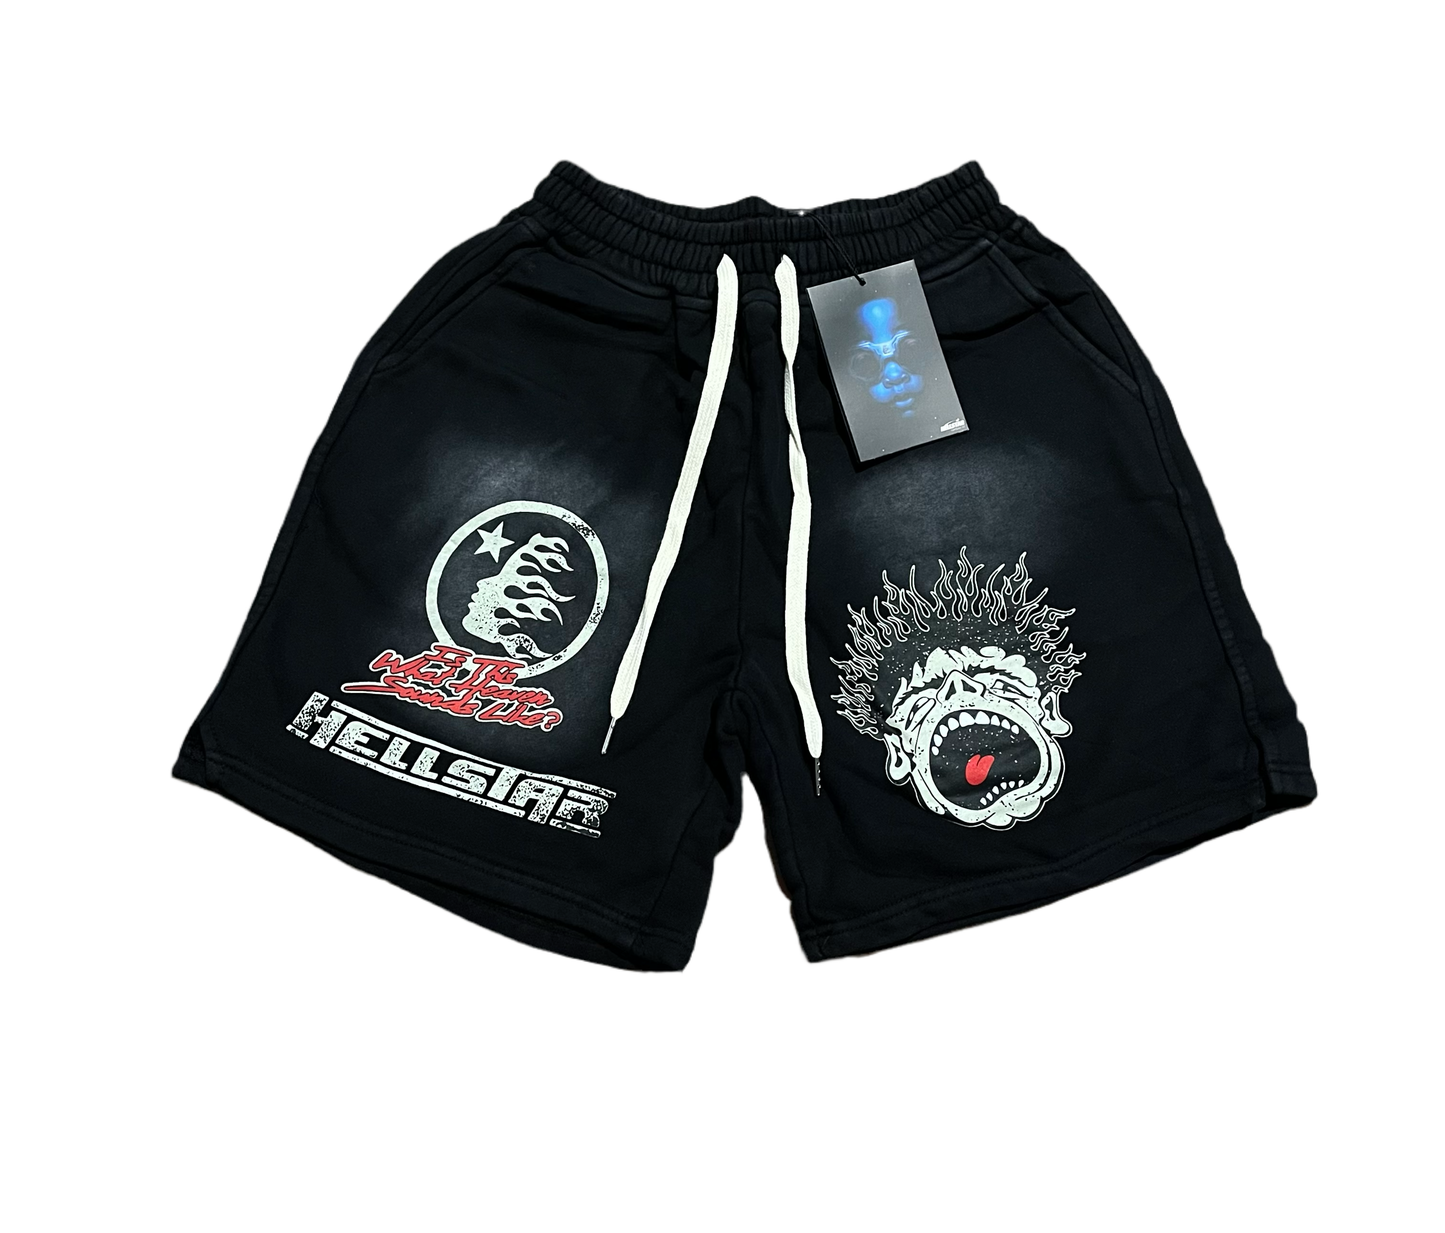 Hellstar shorts